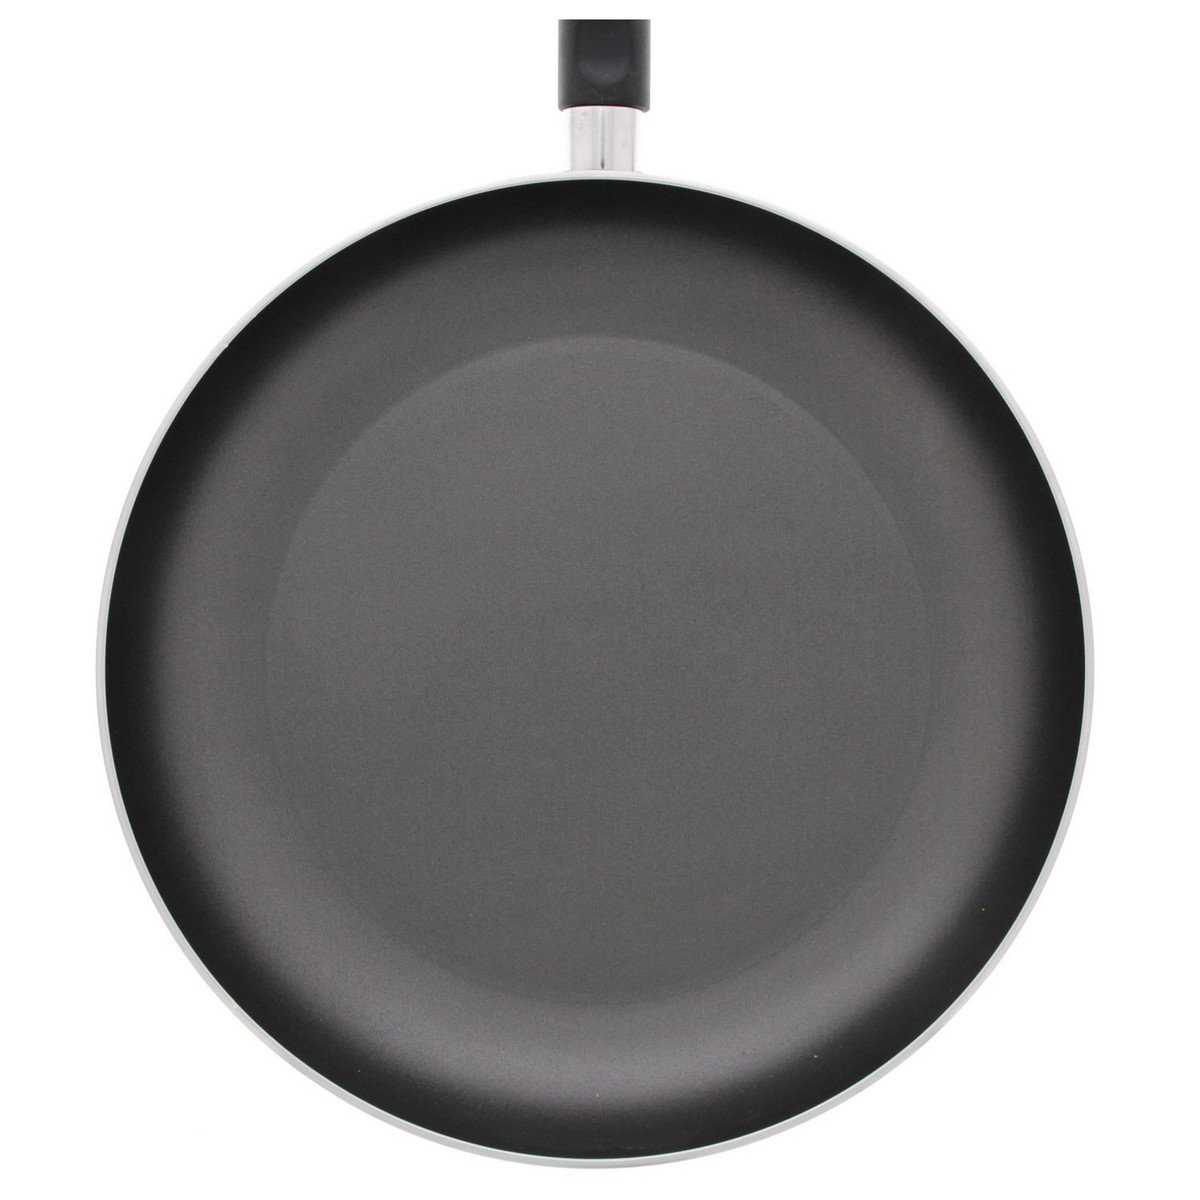 Prestige Classique Non-Stick Fry Pan, 26 cm